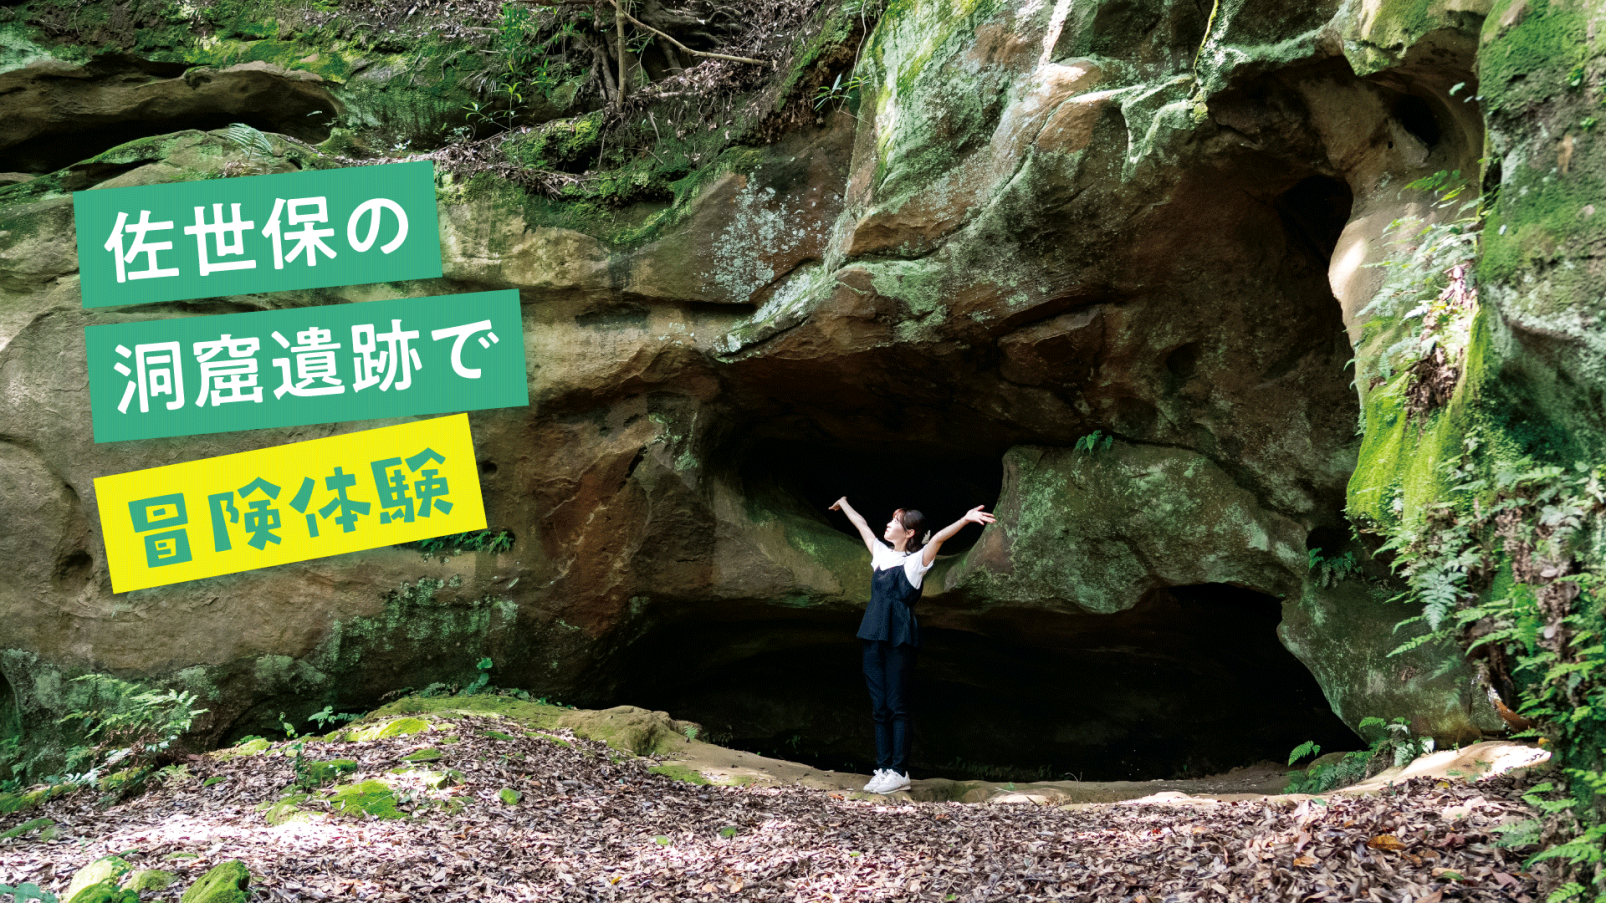 夏休みの自由研究に！佐世保の洞窟遺跡で冒険体験